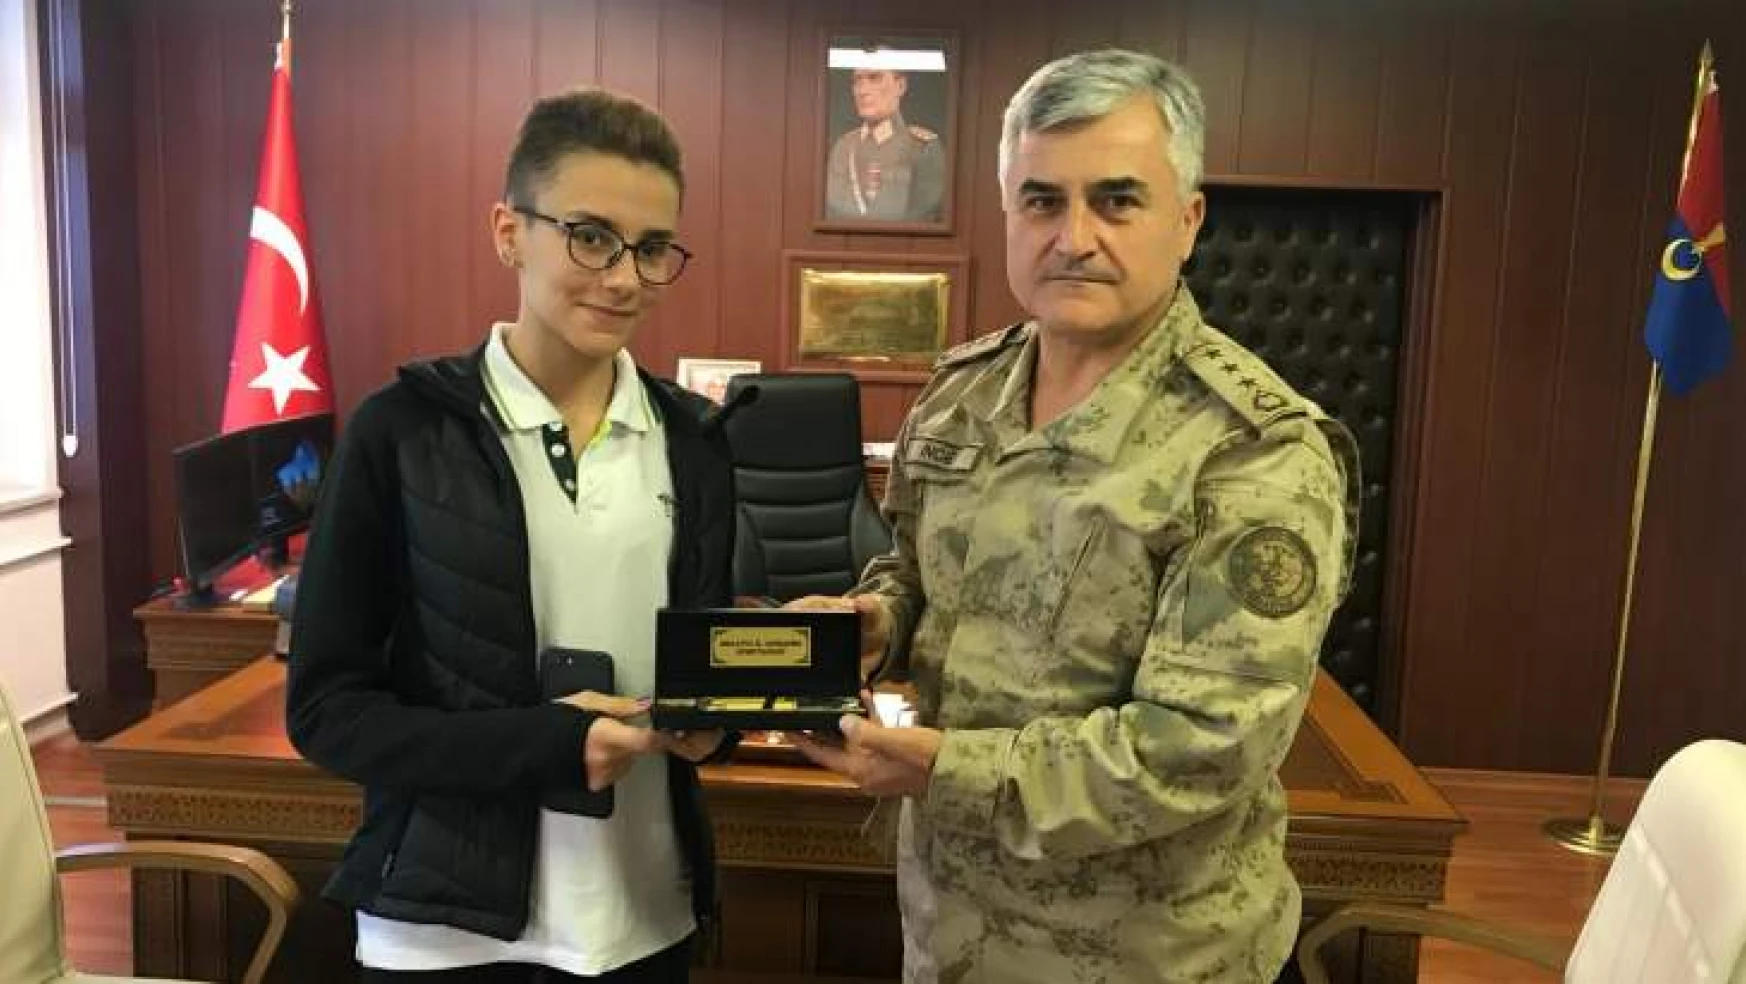 İl Jandarma Komutanı İnce'den, Kemoterapi Gören Gazi Kızına Moral!